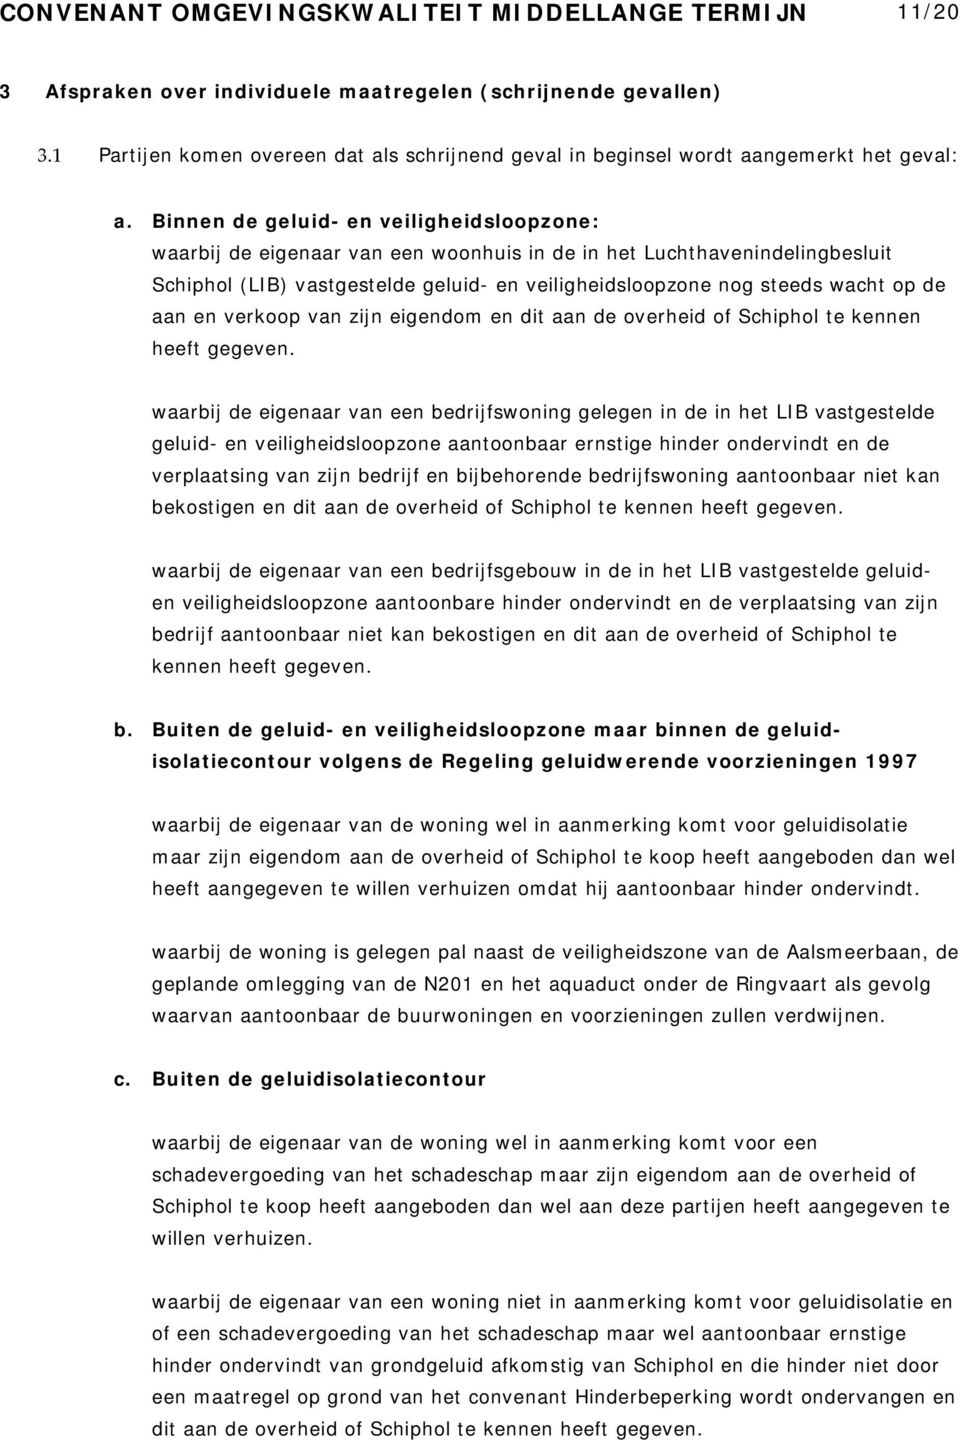 Binnen de geluid- en veiligheidsloopzone: waarbij de eigenaar van een woonhuis in de in het Luchthavenindelingbesluit Schiphol (LIB) vastgestelde geluid- en veiligheidsloopzone nog steeds wacht op de